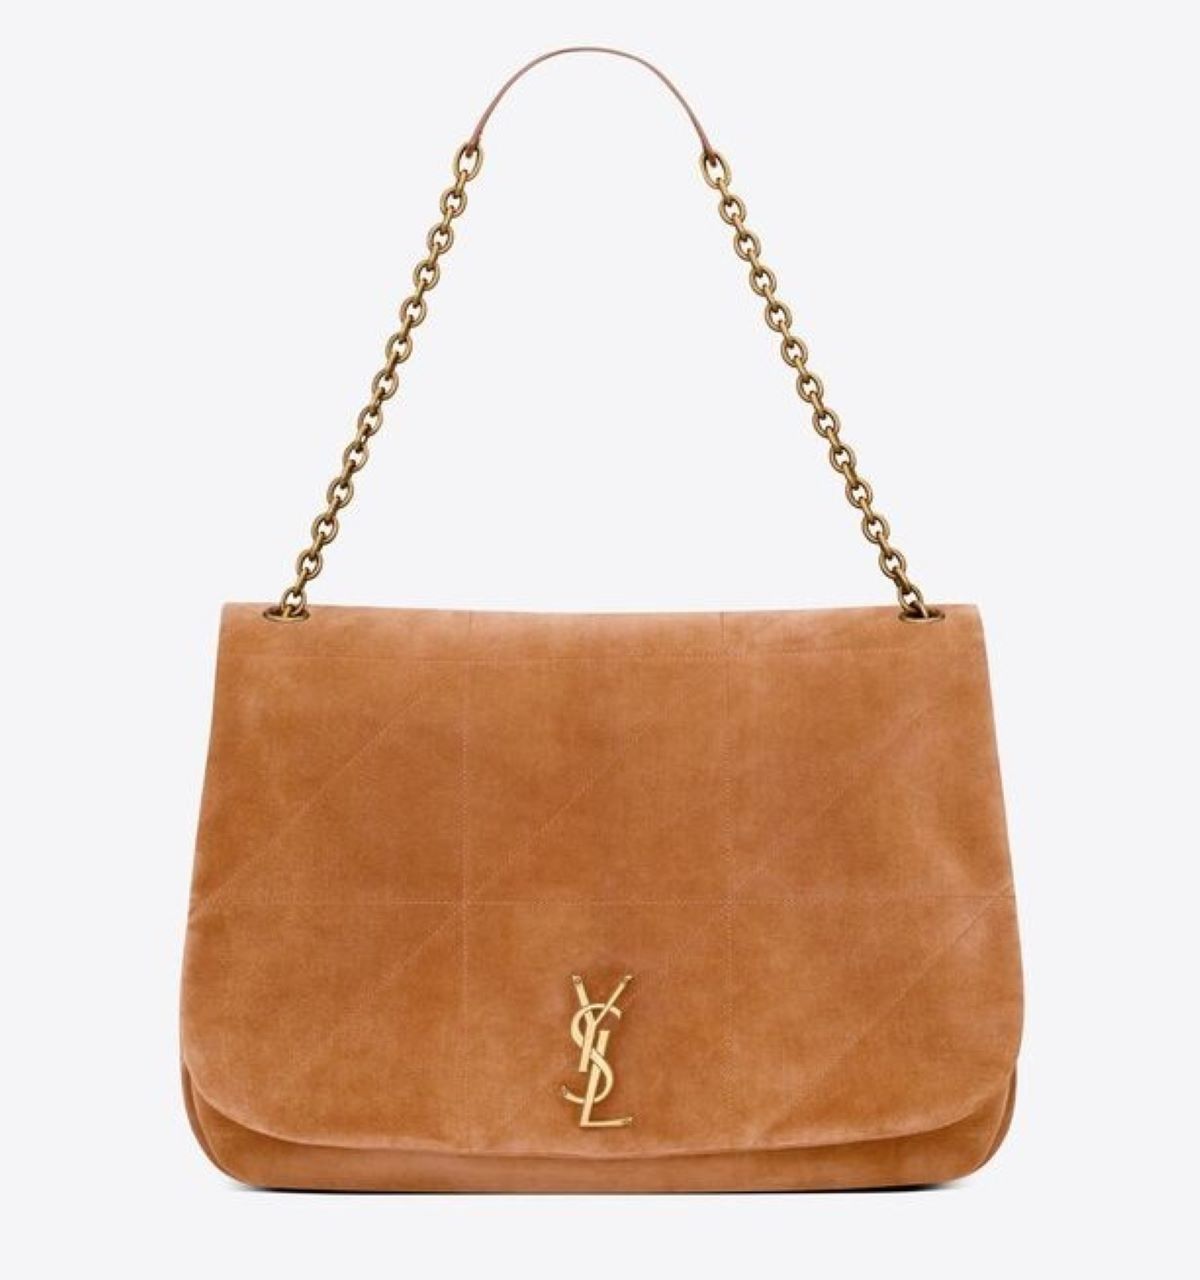 Kathryn Bernardo Style — Kathryn was spotted bringing this YSL bag.